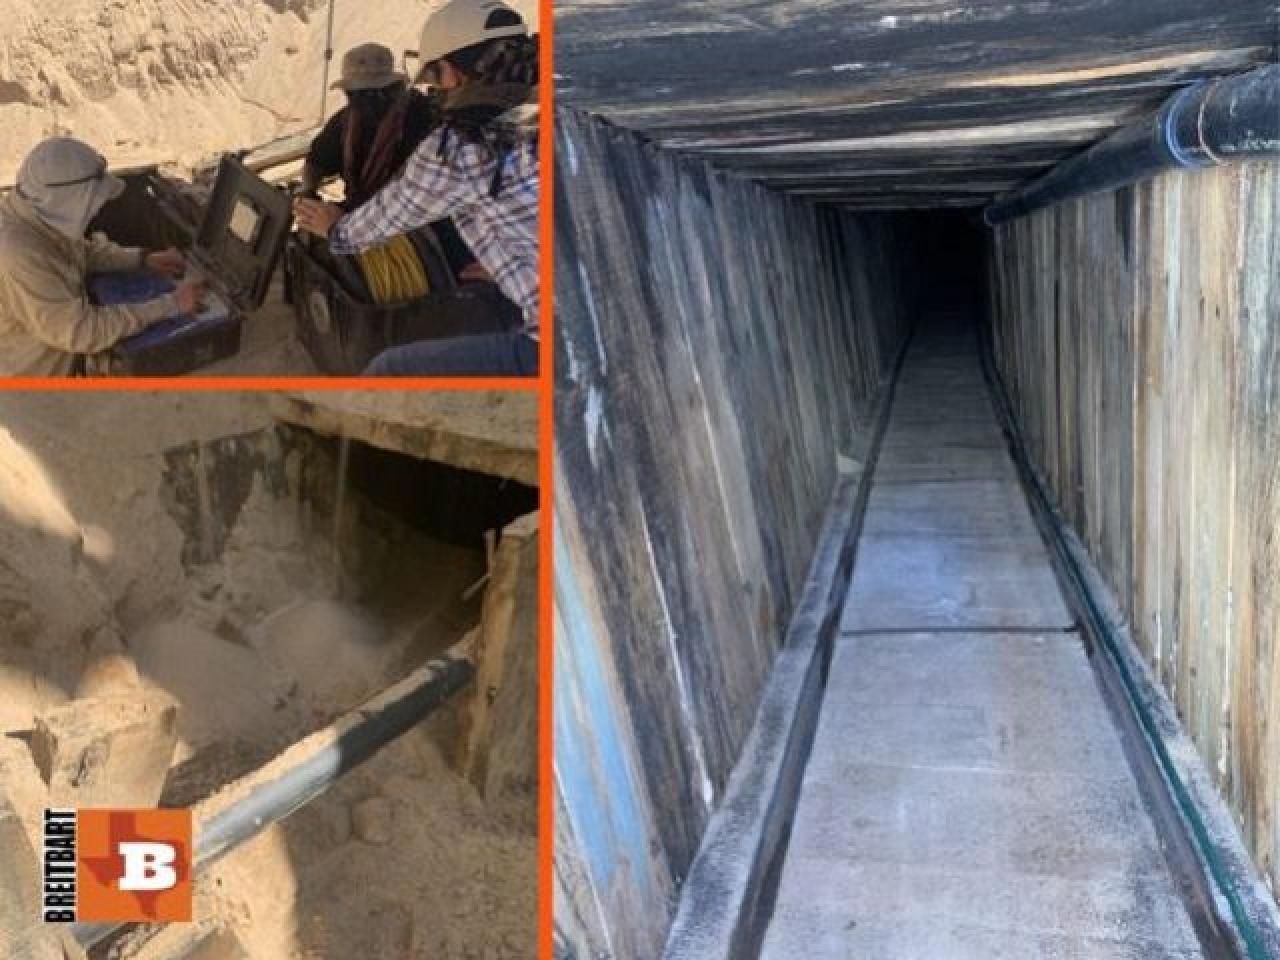 Otkriveni tunel ispod granice Meksika i USA - Kada narkokartel napravi bolji tunel nego što je Crnaja